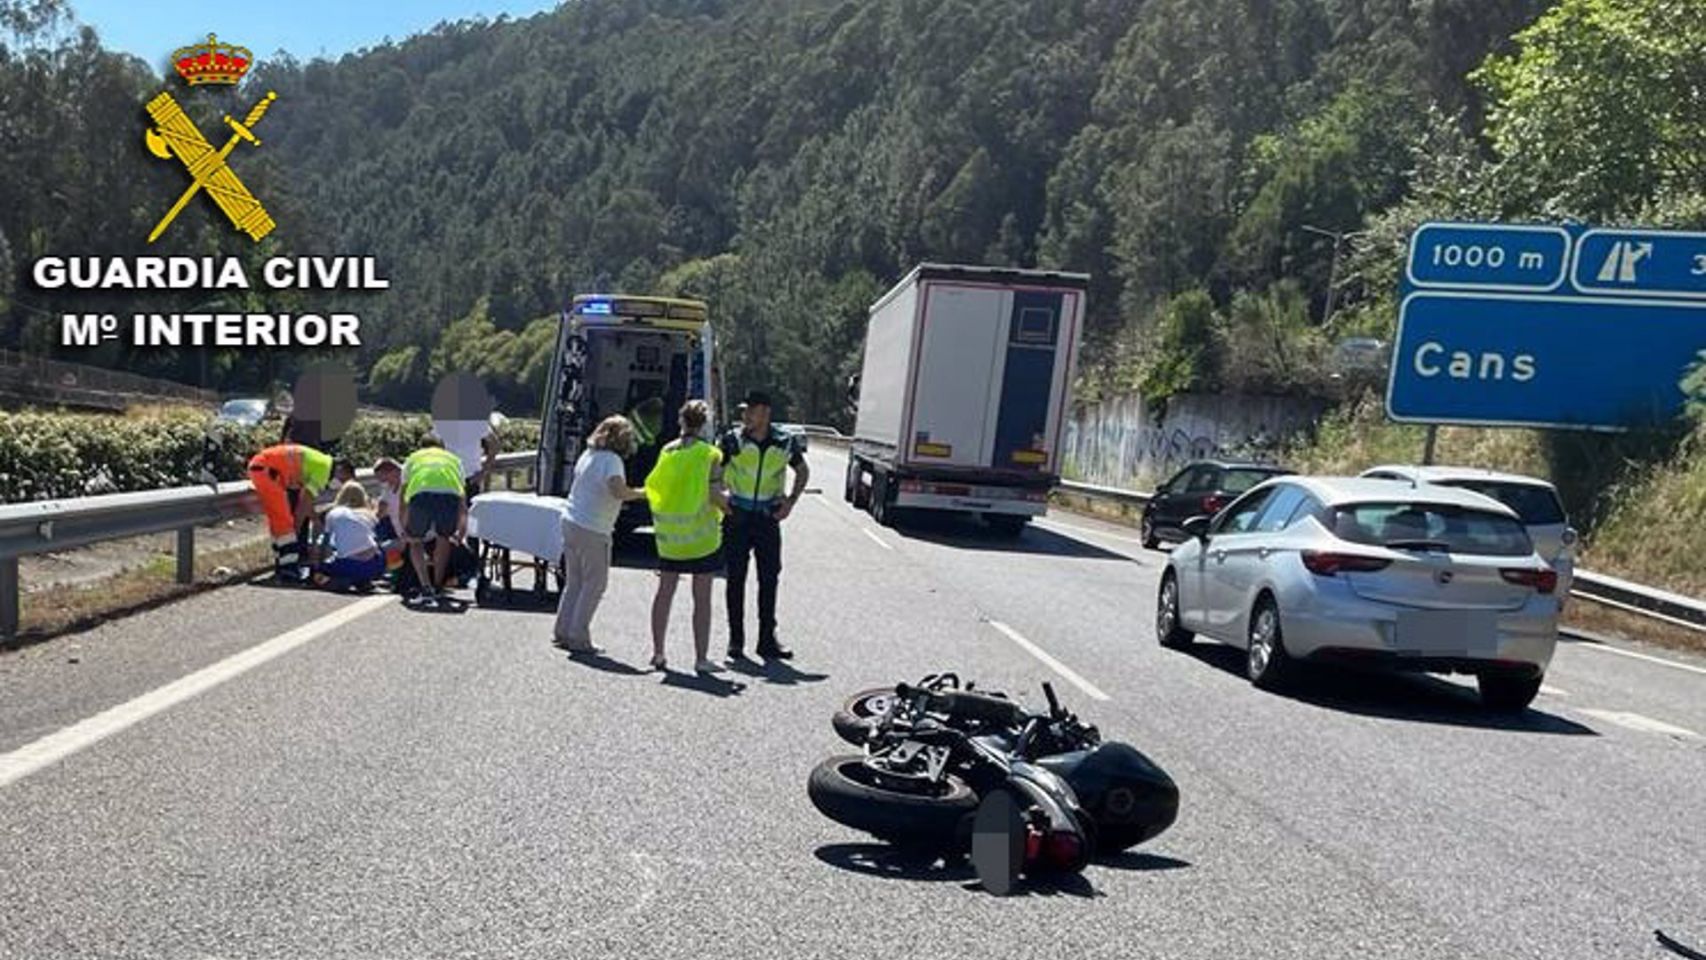 La Guardia Civil pide colaboración ciudadana para localizar al conductor que provocó el accidente de Cans